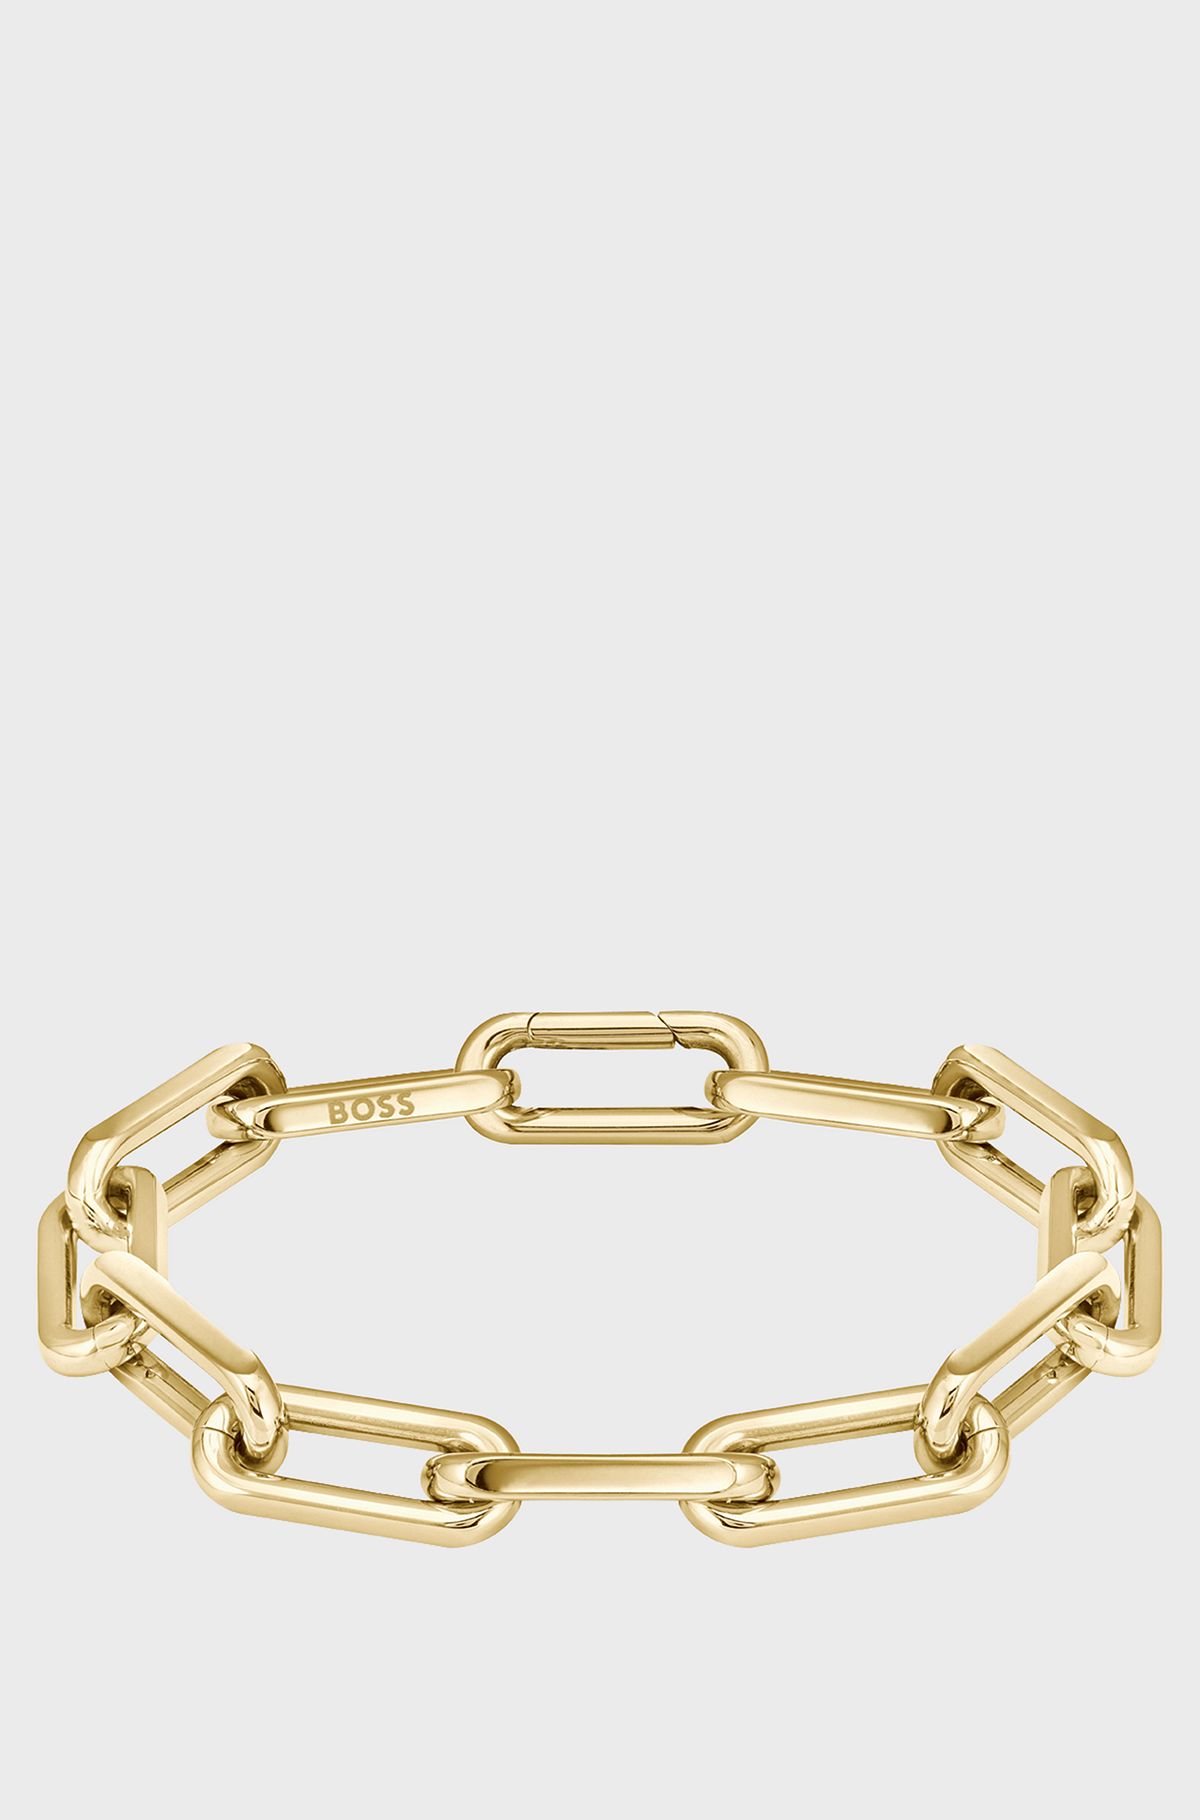 Gold-tone bracelet with branded link, Gold